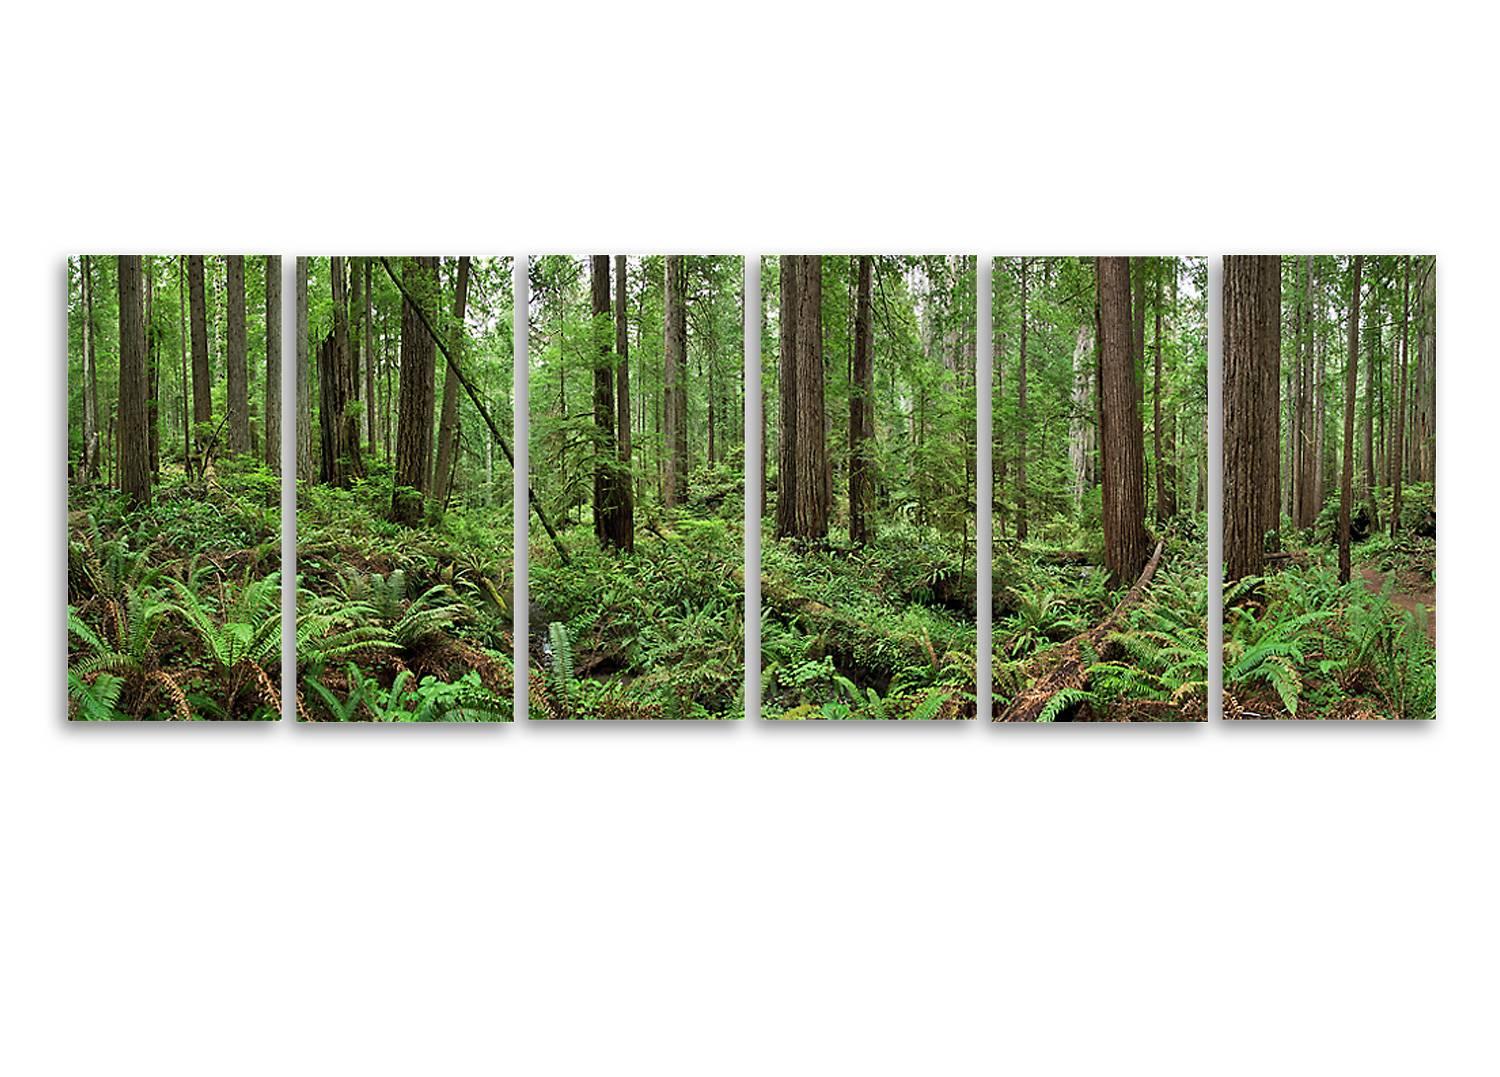 Redwoods - observation de la nature grand format dans six photographies individuelles 